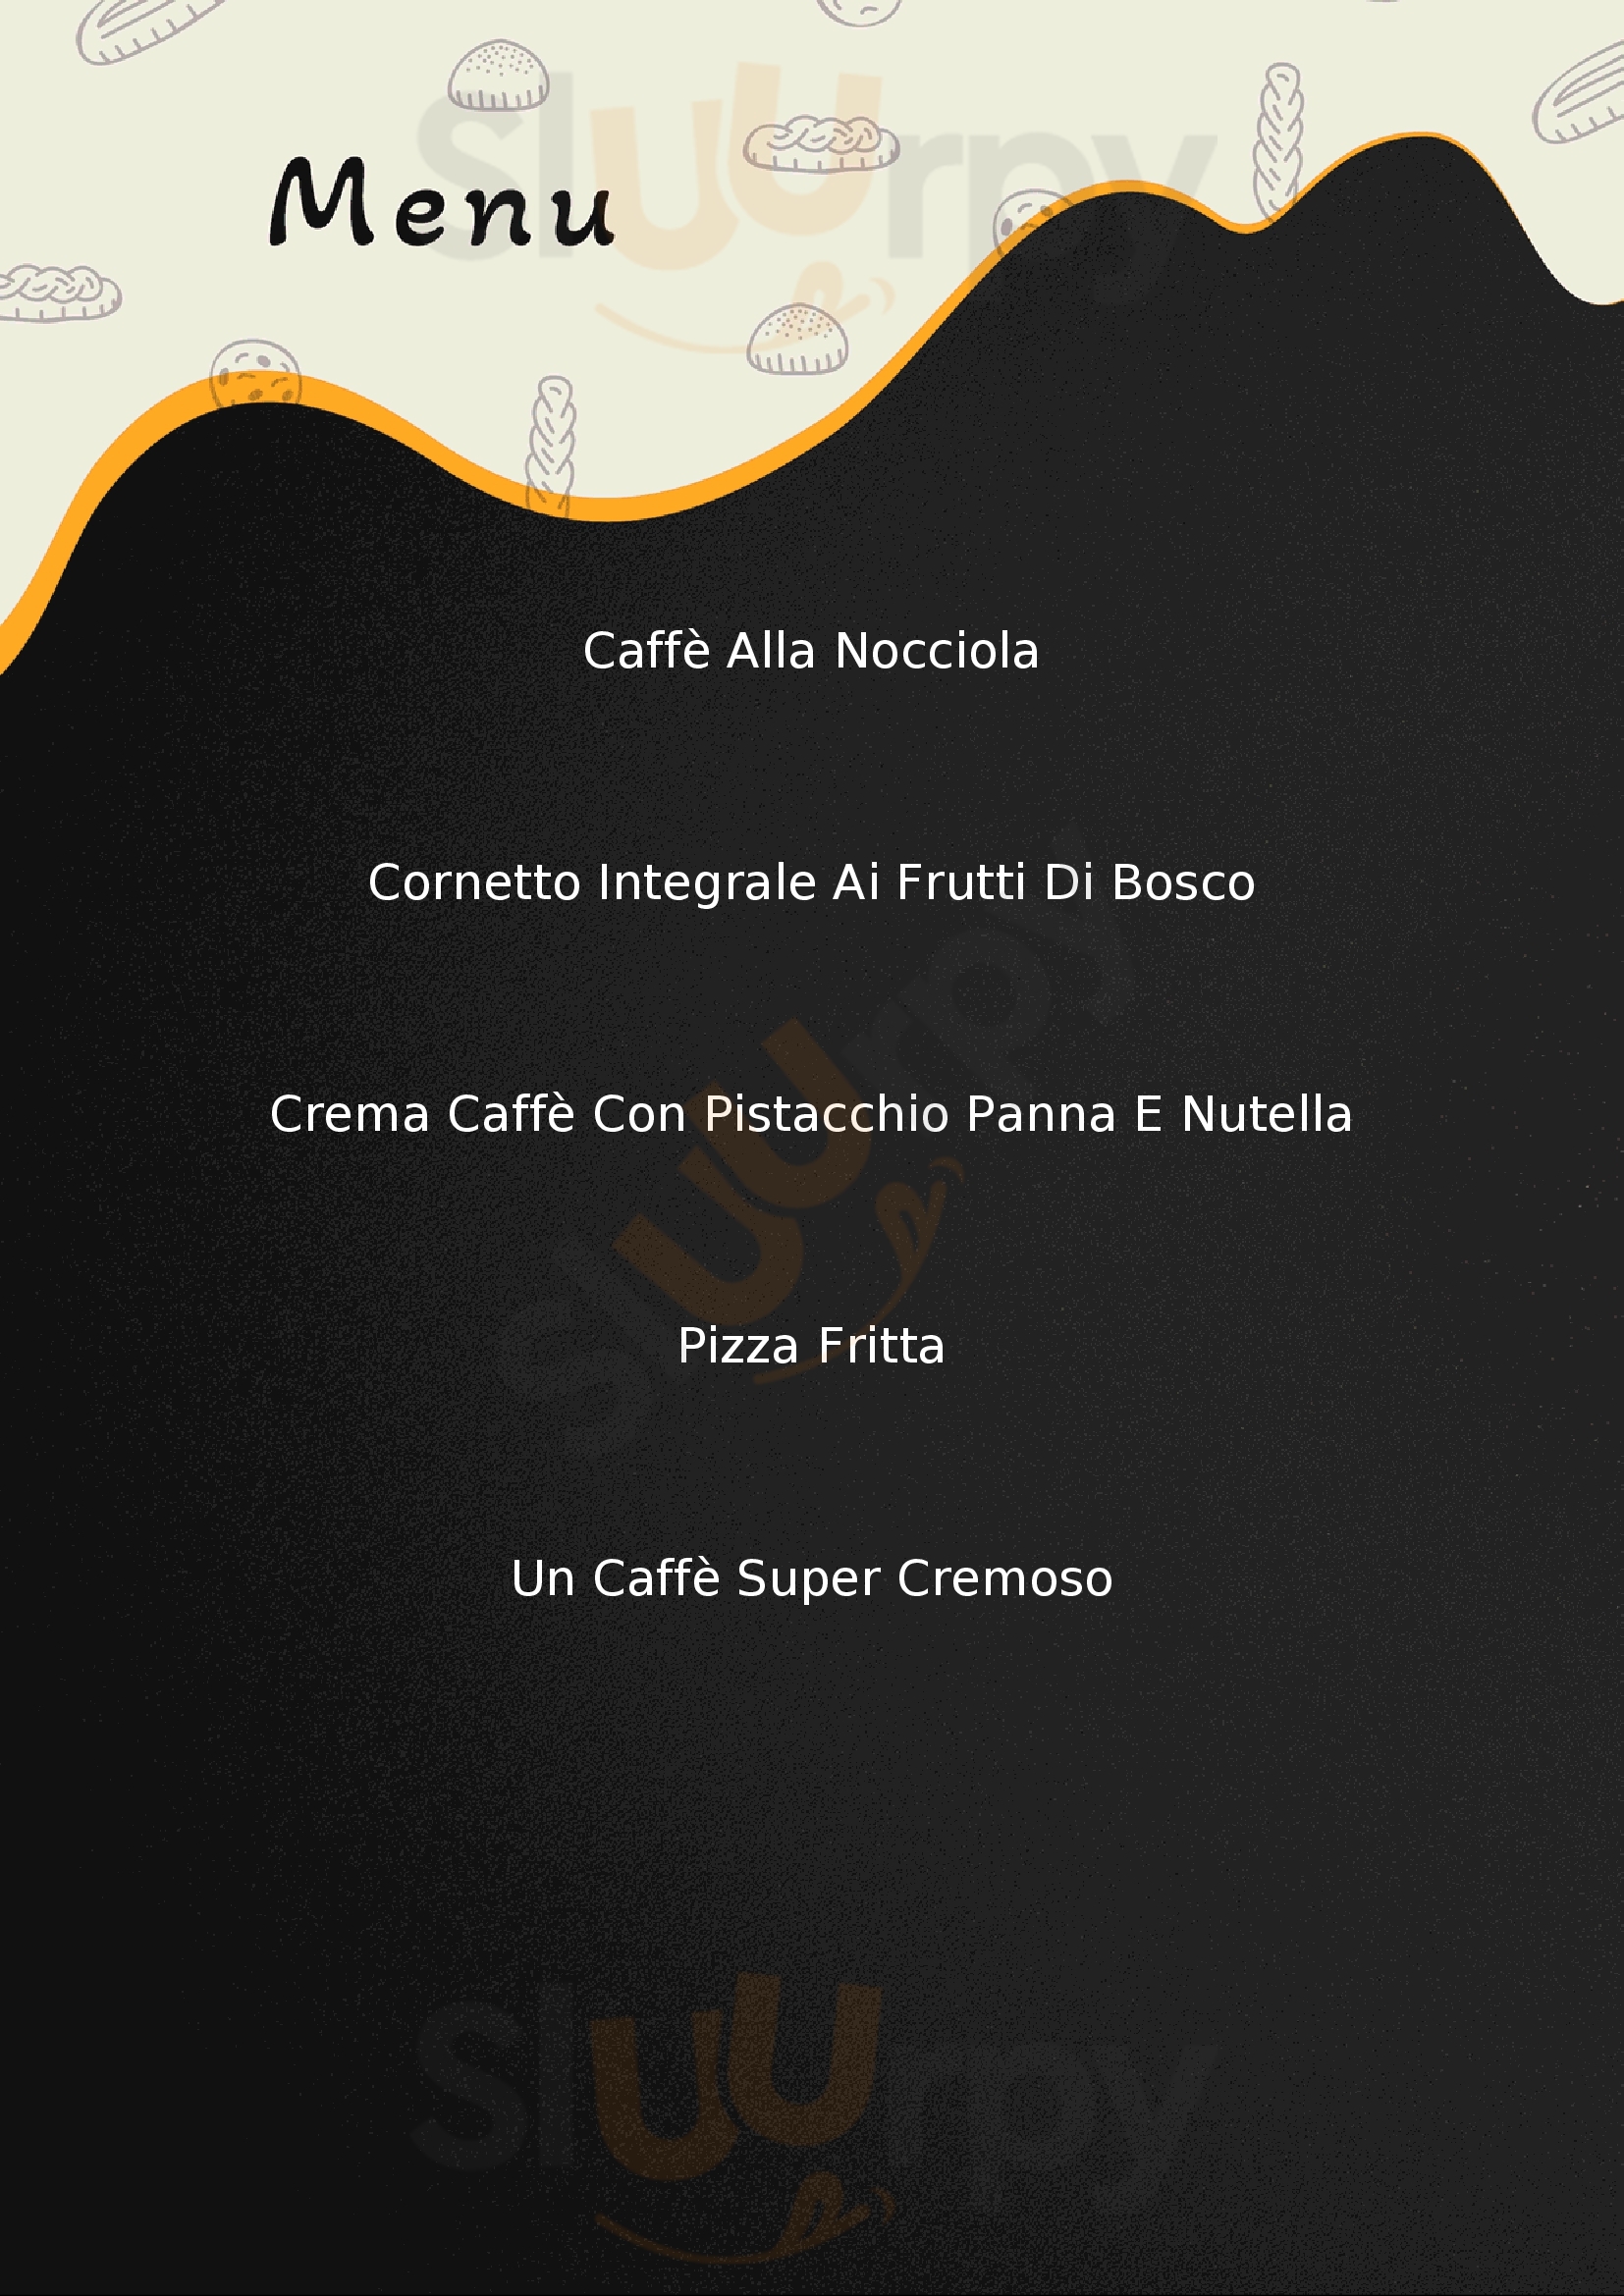 Gran caffe Arenella Napoli menù 1 pagina